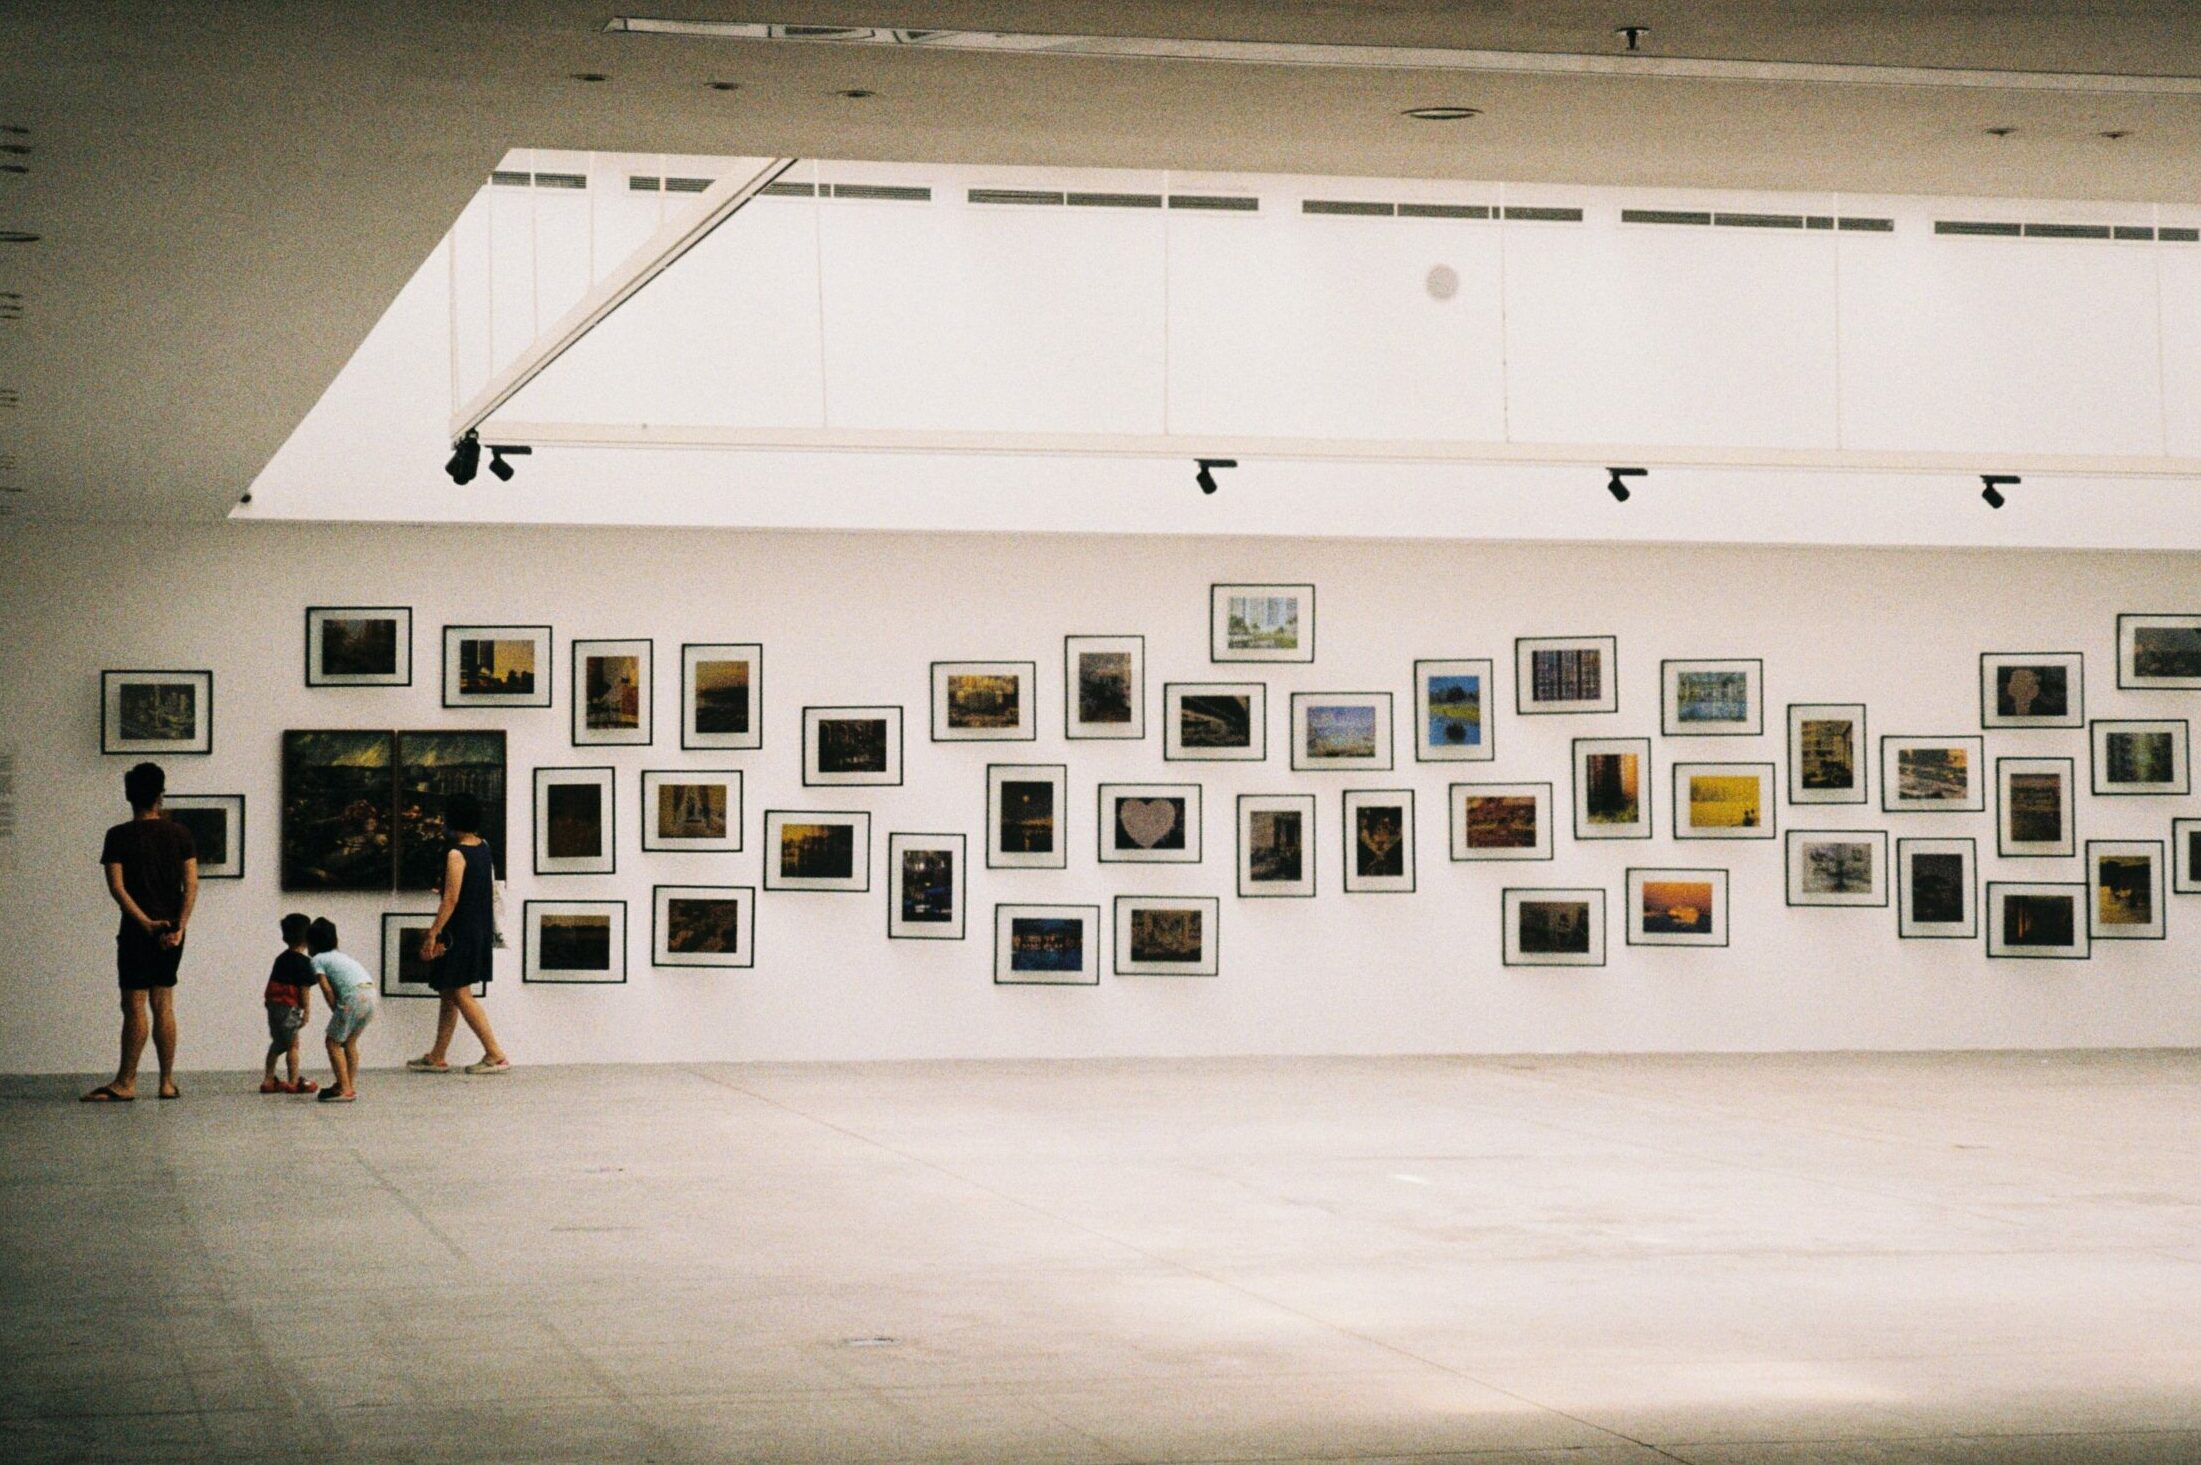 Blick in einen Ausstellungsraum mit mehreren Bilderrahmen